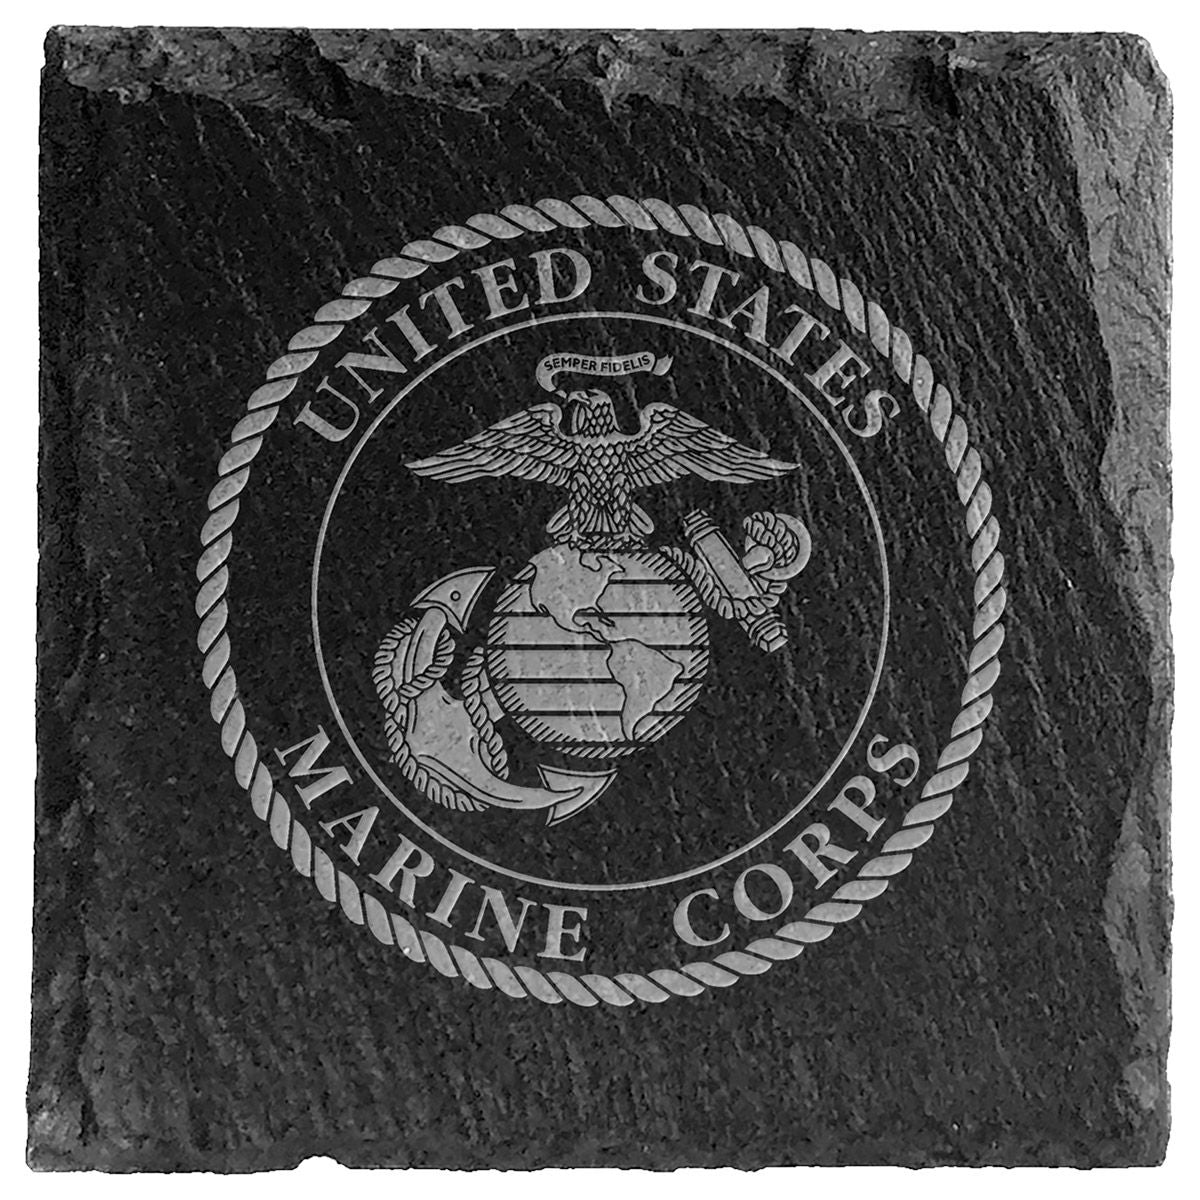 United States Marines Slate Coasters